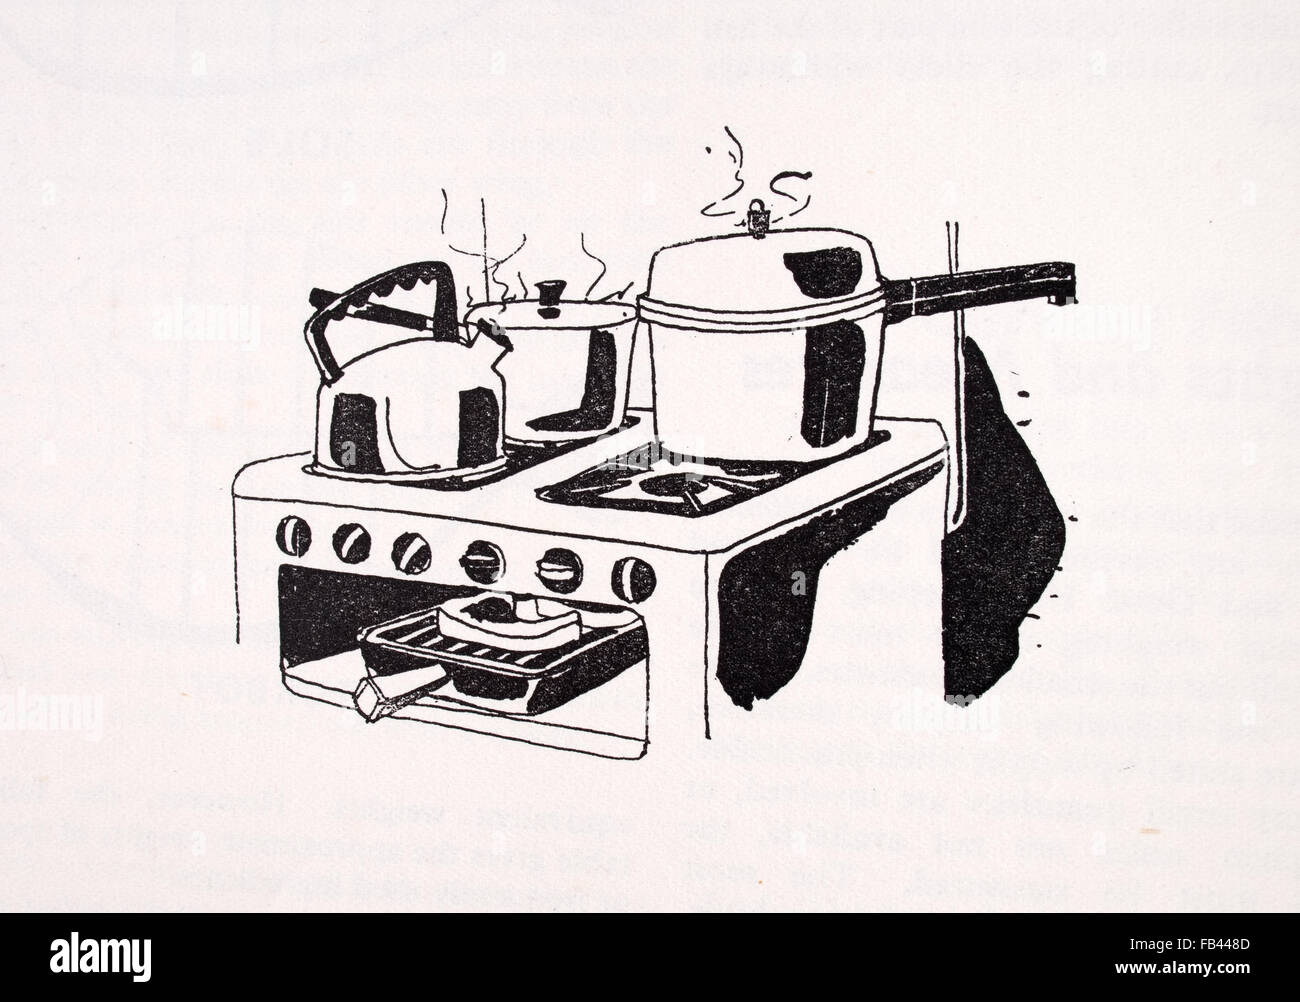 Fornello, Piano Cottura dettaglio con pentole. Stampa dal 1957 edizione del  libro di buone condizioni di ordine e pulizia Foto stock - Alamy